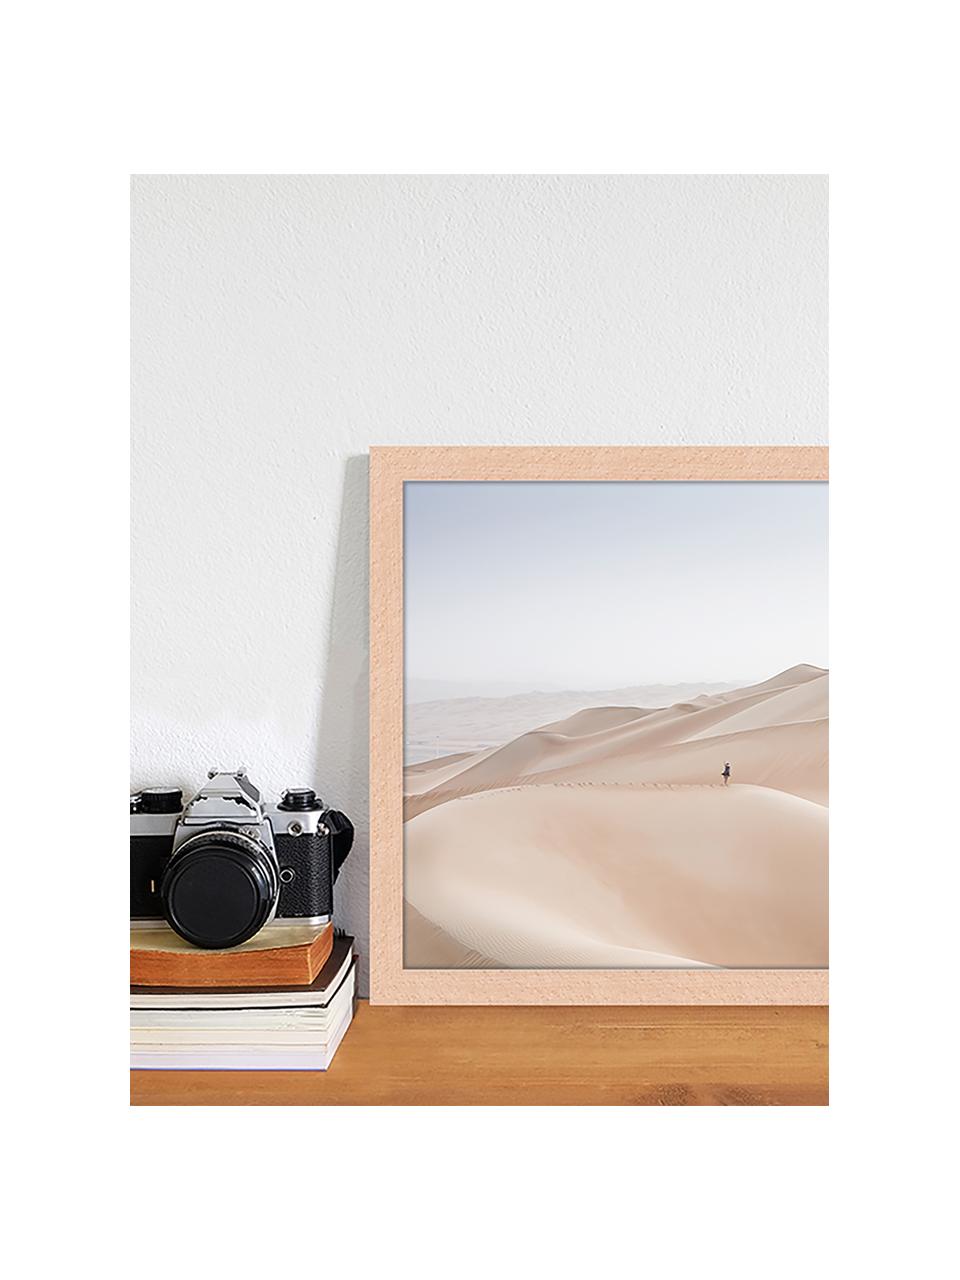 Gerahmter Digitaldruck Khali Desert, Bild: Digitaldruck auf Papier, , Rahmen: Holz, lackiert, Front: Plexiglas, Mehrfarbig, 43 x 33 cm